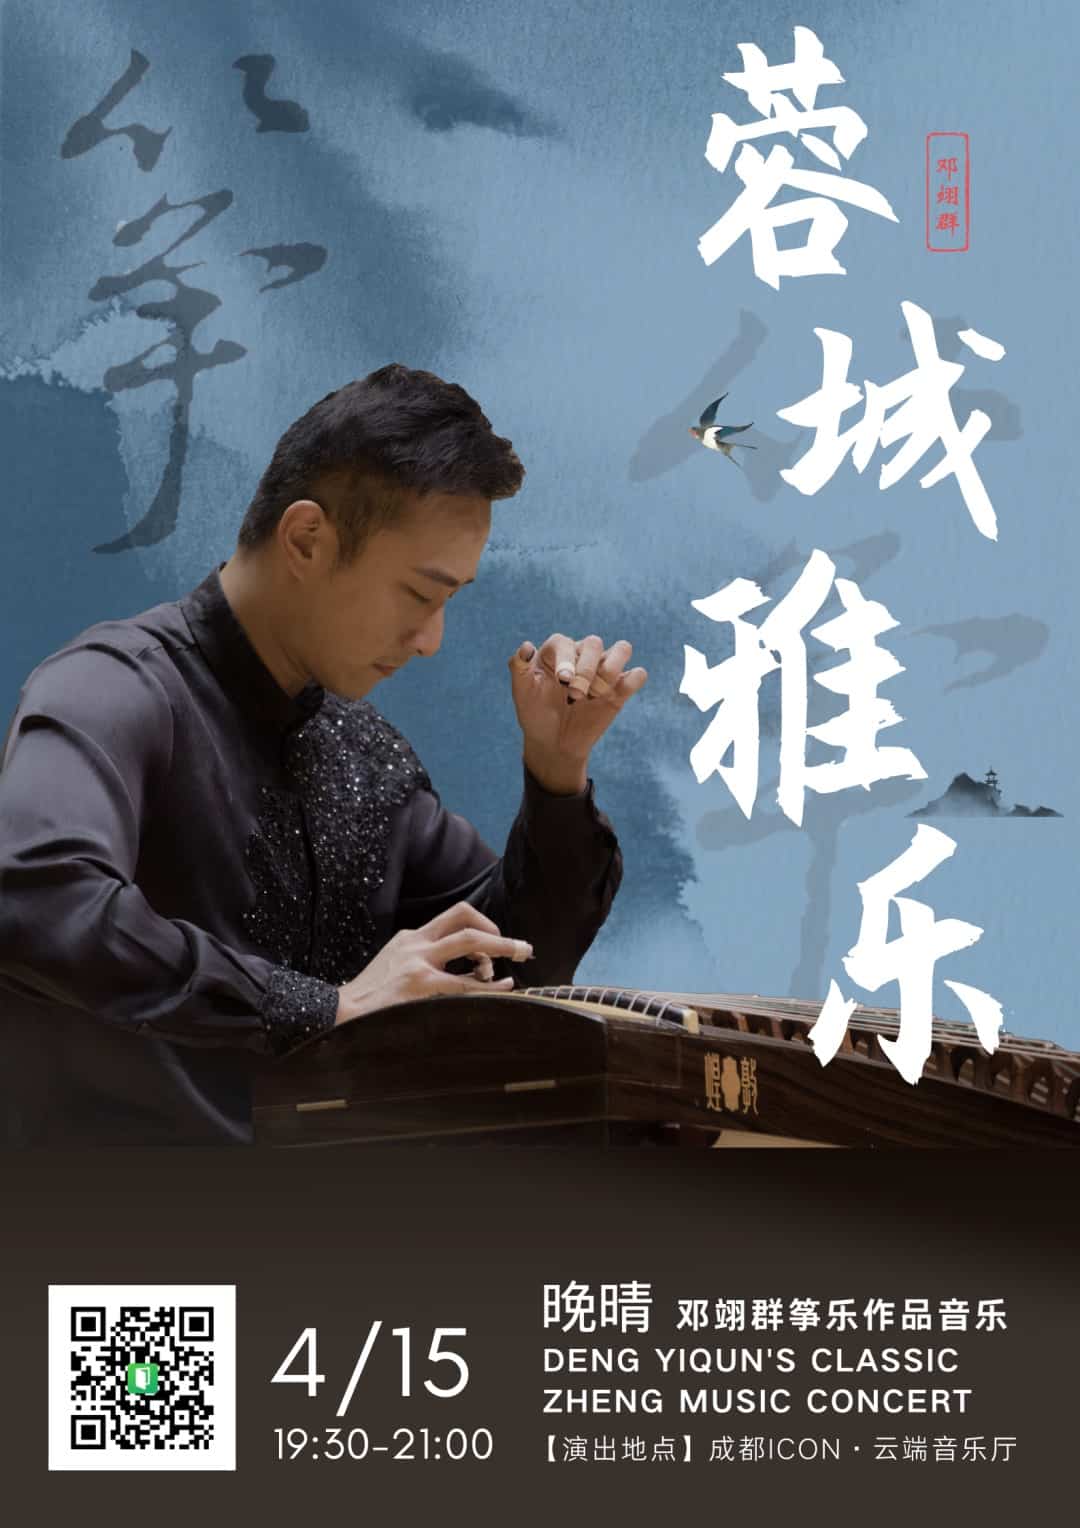 Deng Yiquns Classic Zheng Music Concert chengdu expat